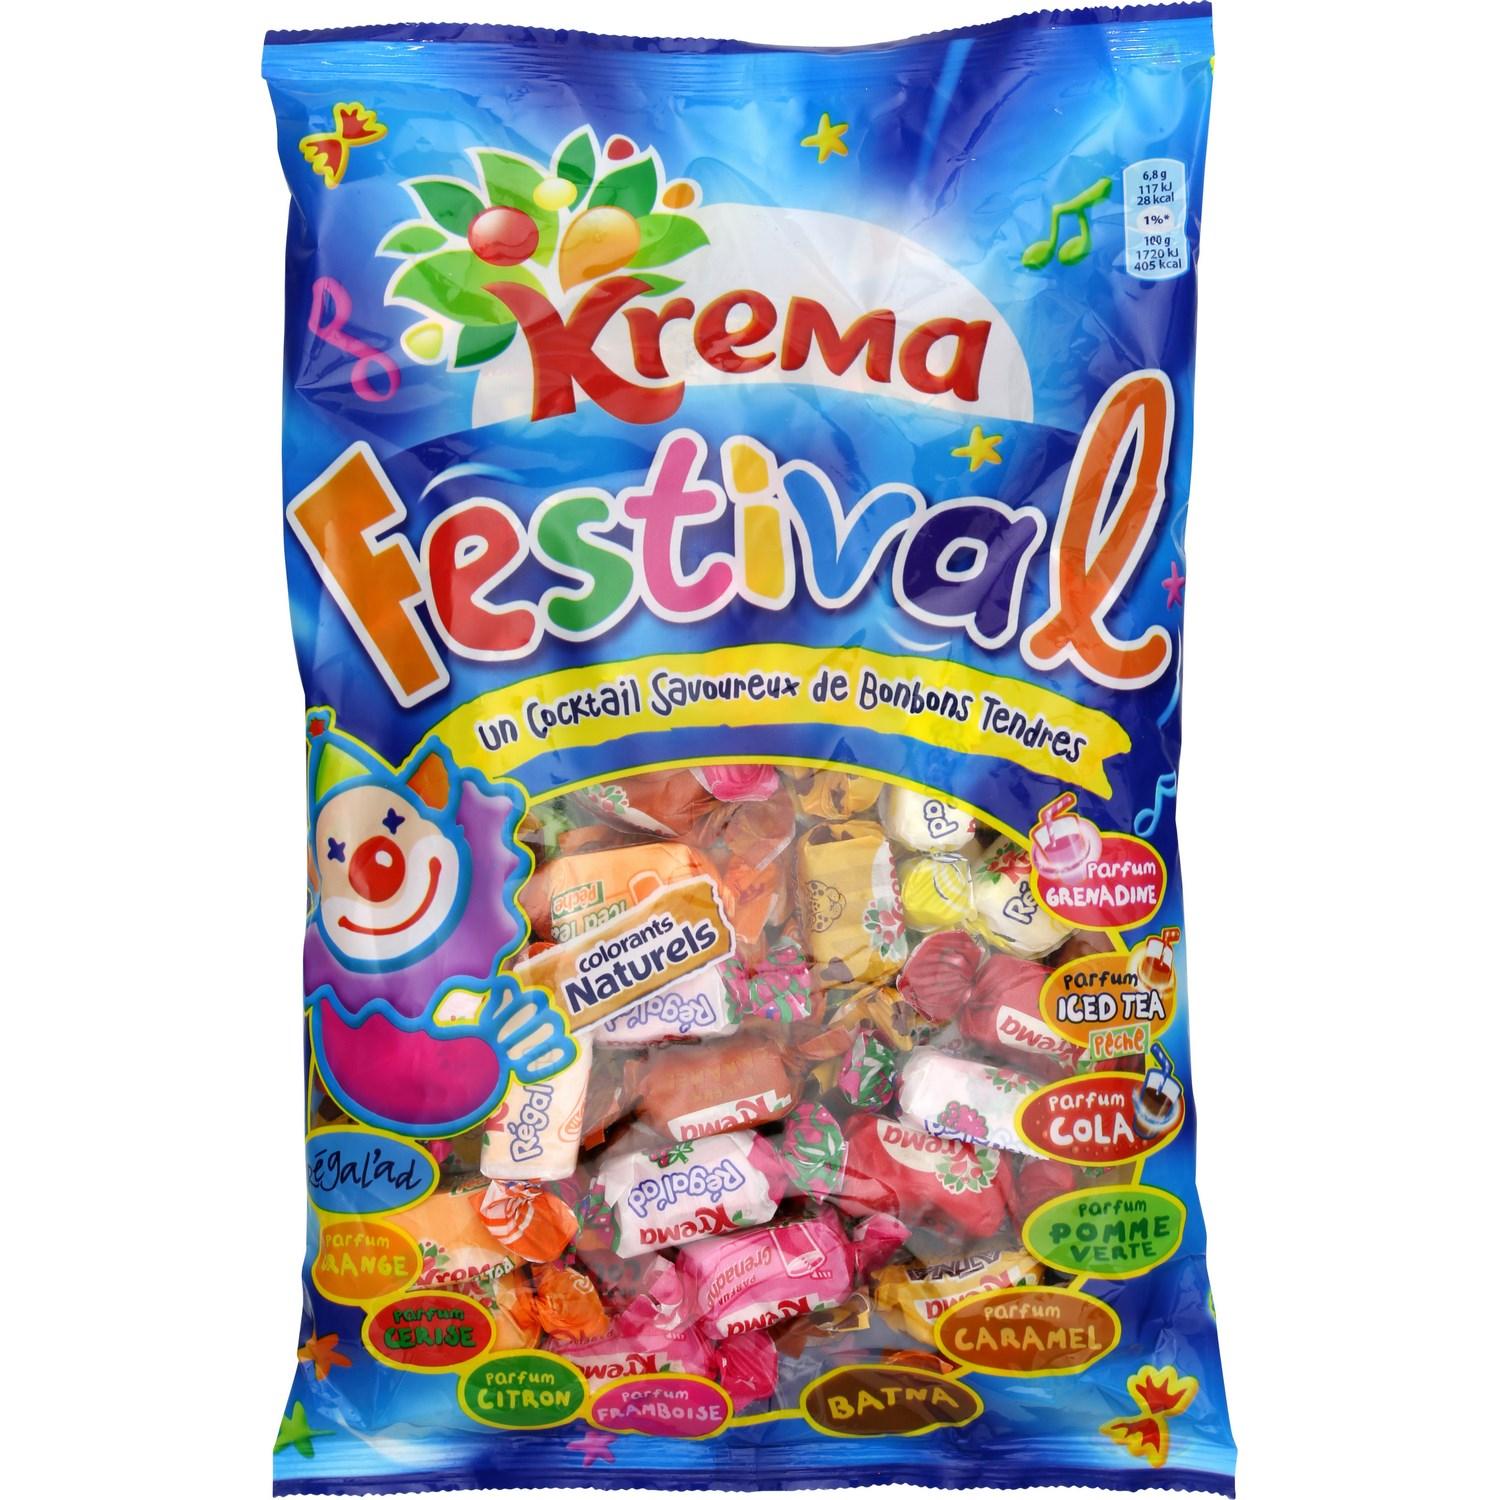 Krema Festival, Buy Online